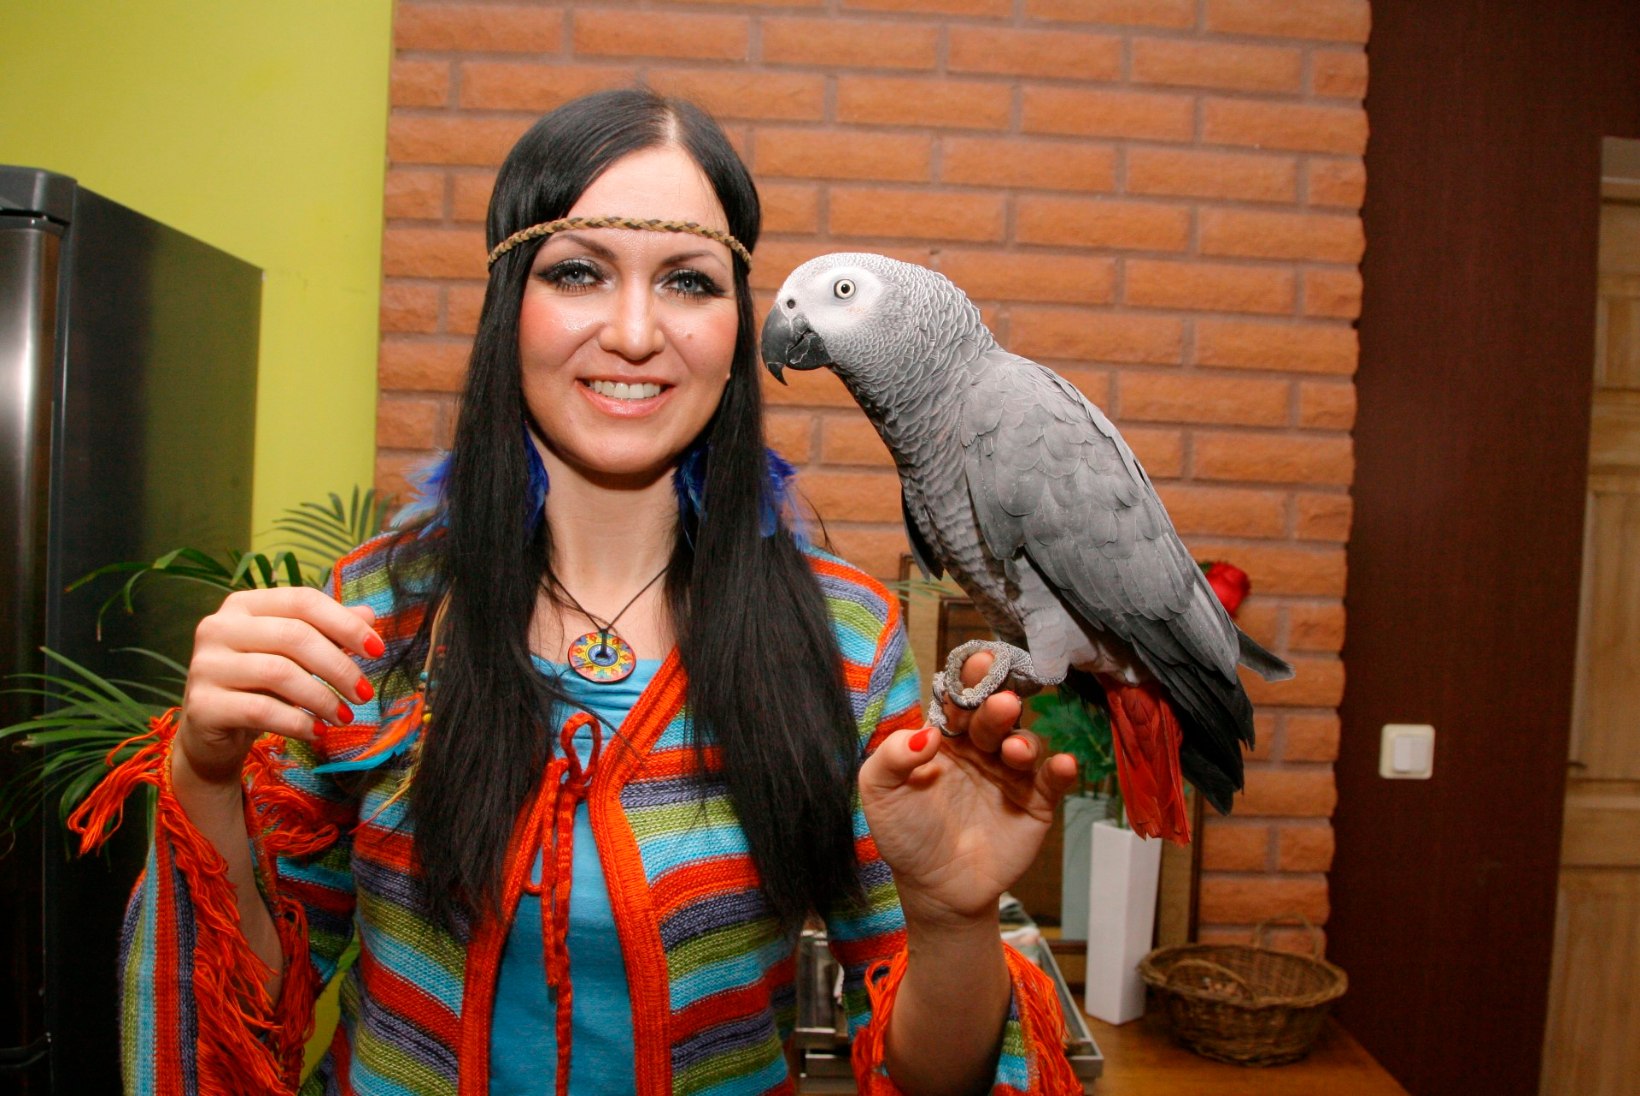 Papagoid saavad Eestis varjupaiga